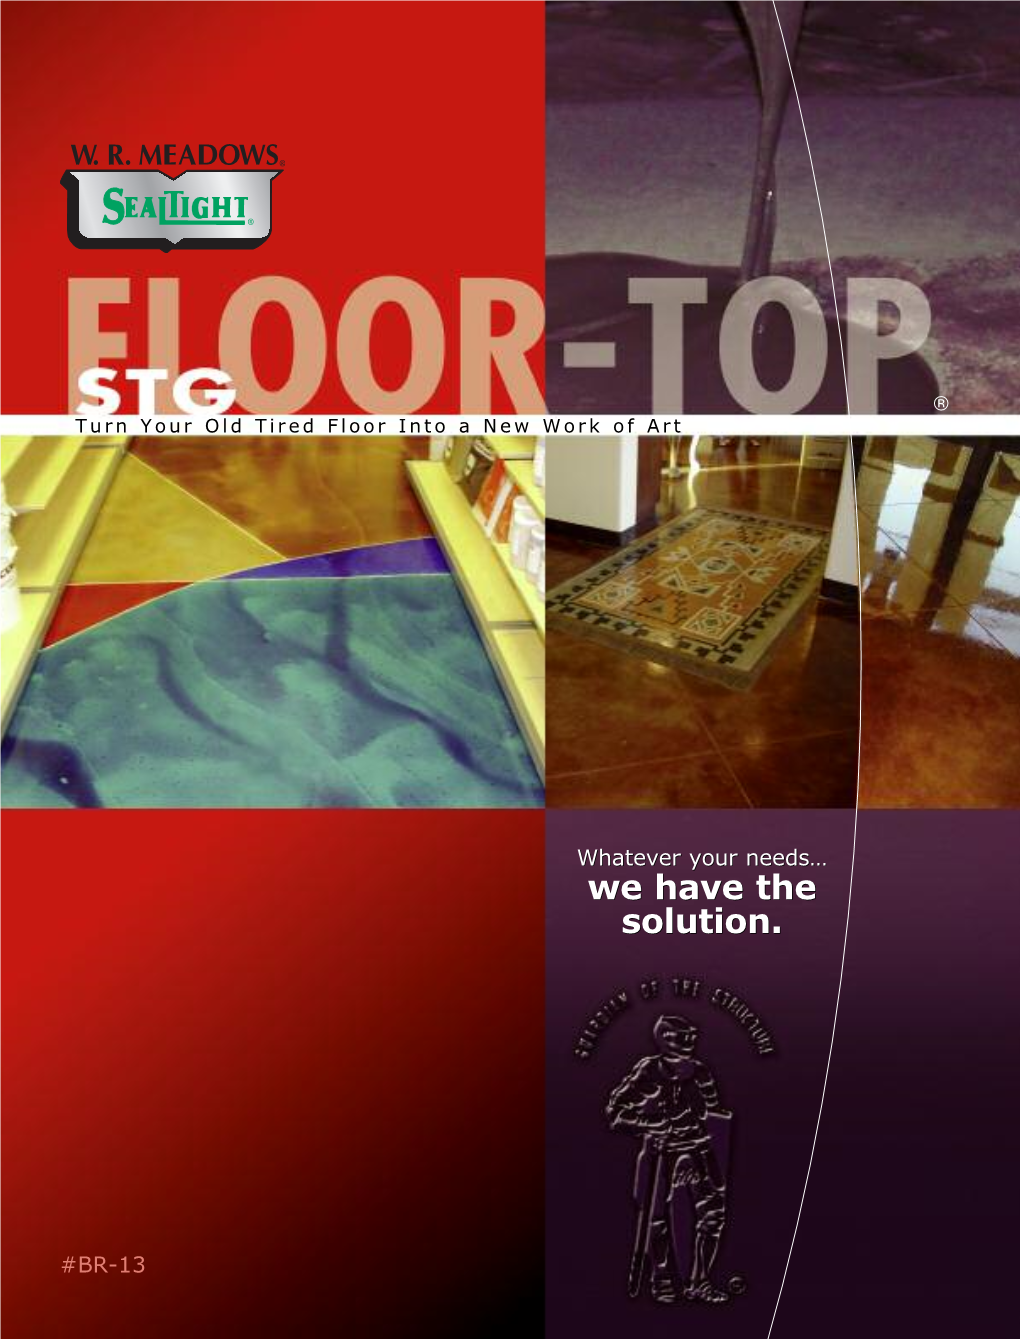 FLOOR-TOP STG Brochure